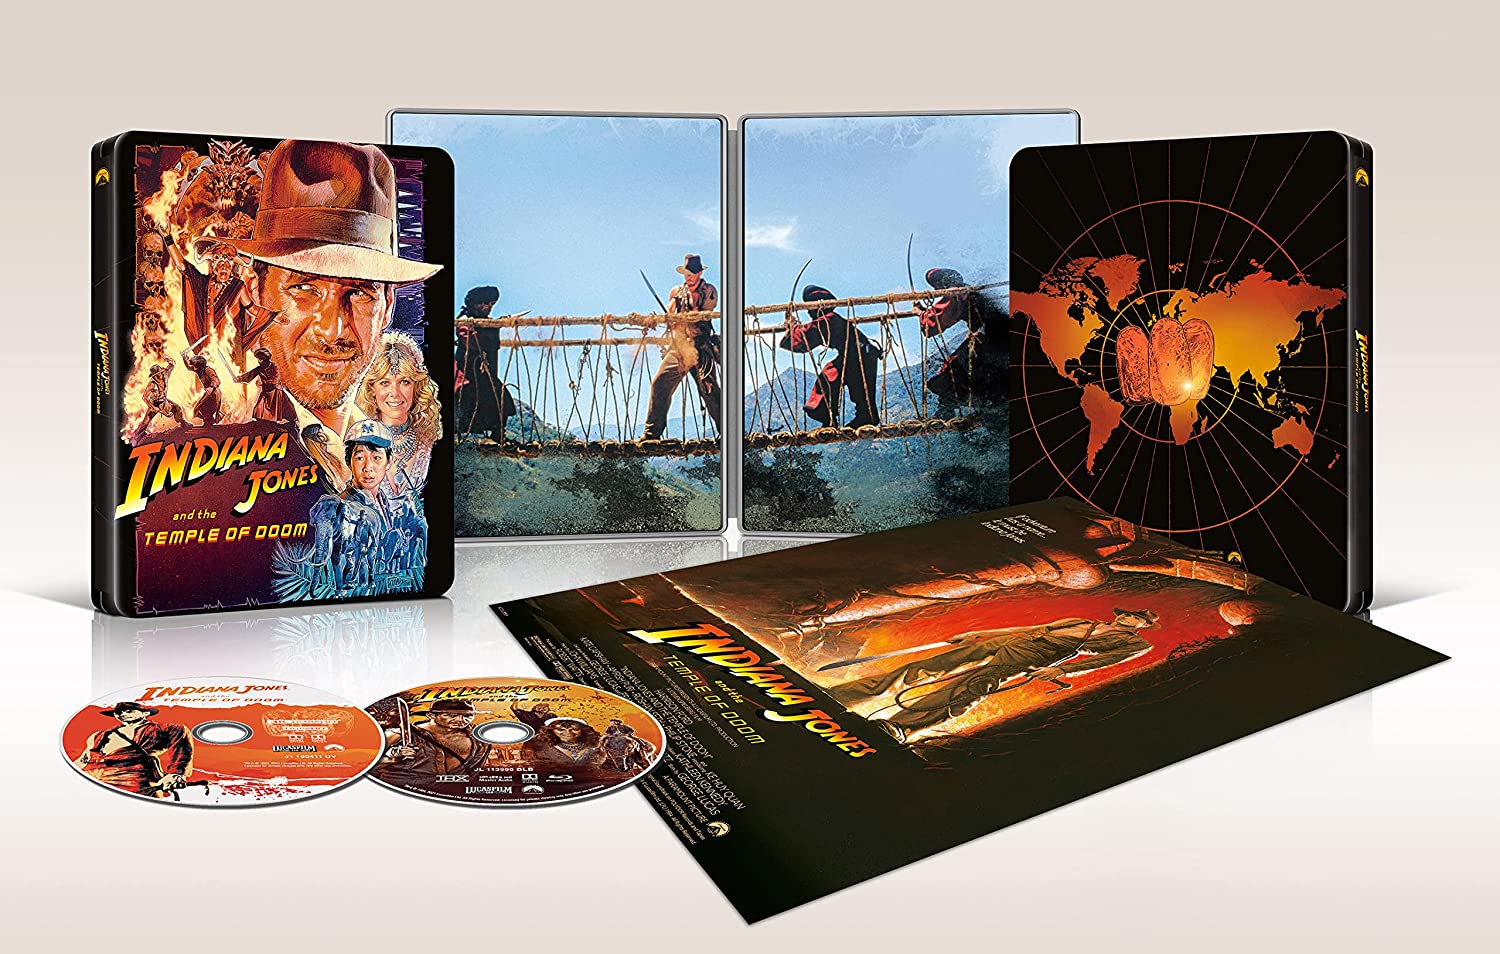 インディ・ジョーンズ 魔宮の伝説 4K Ultra HD スチールブック Indiana Jones and the Temple of Doom Japan steelbook